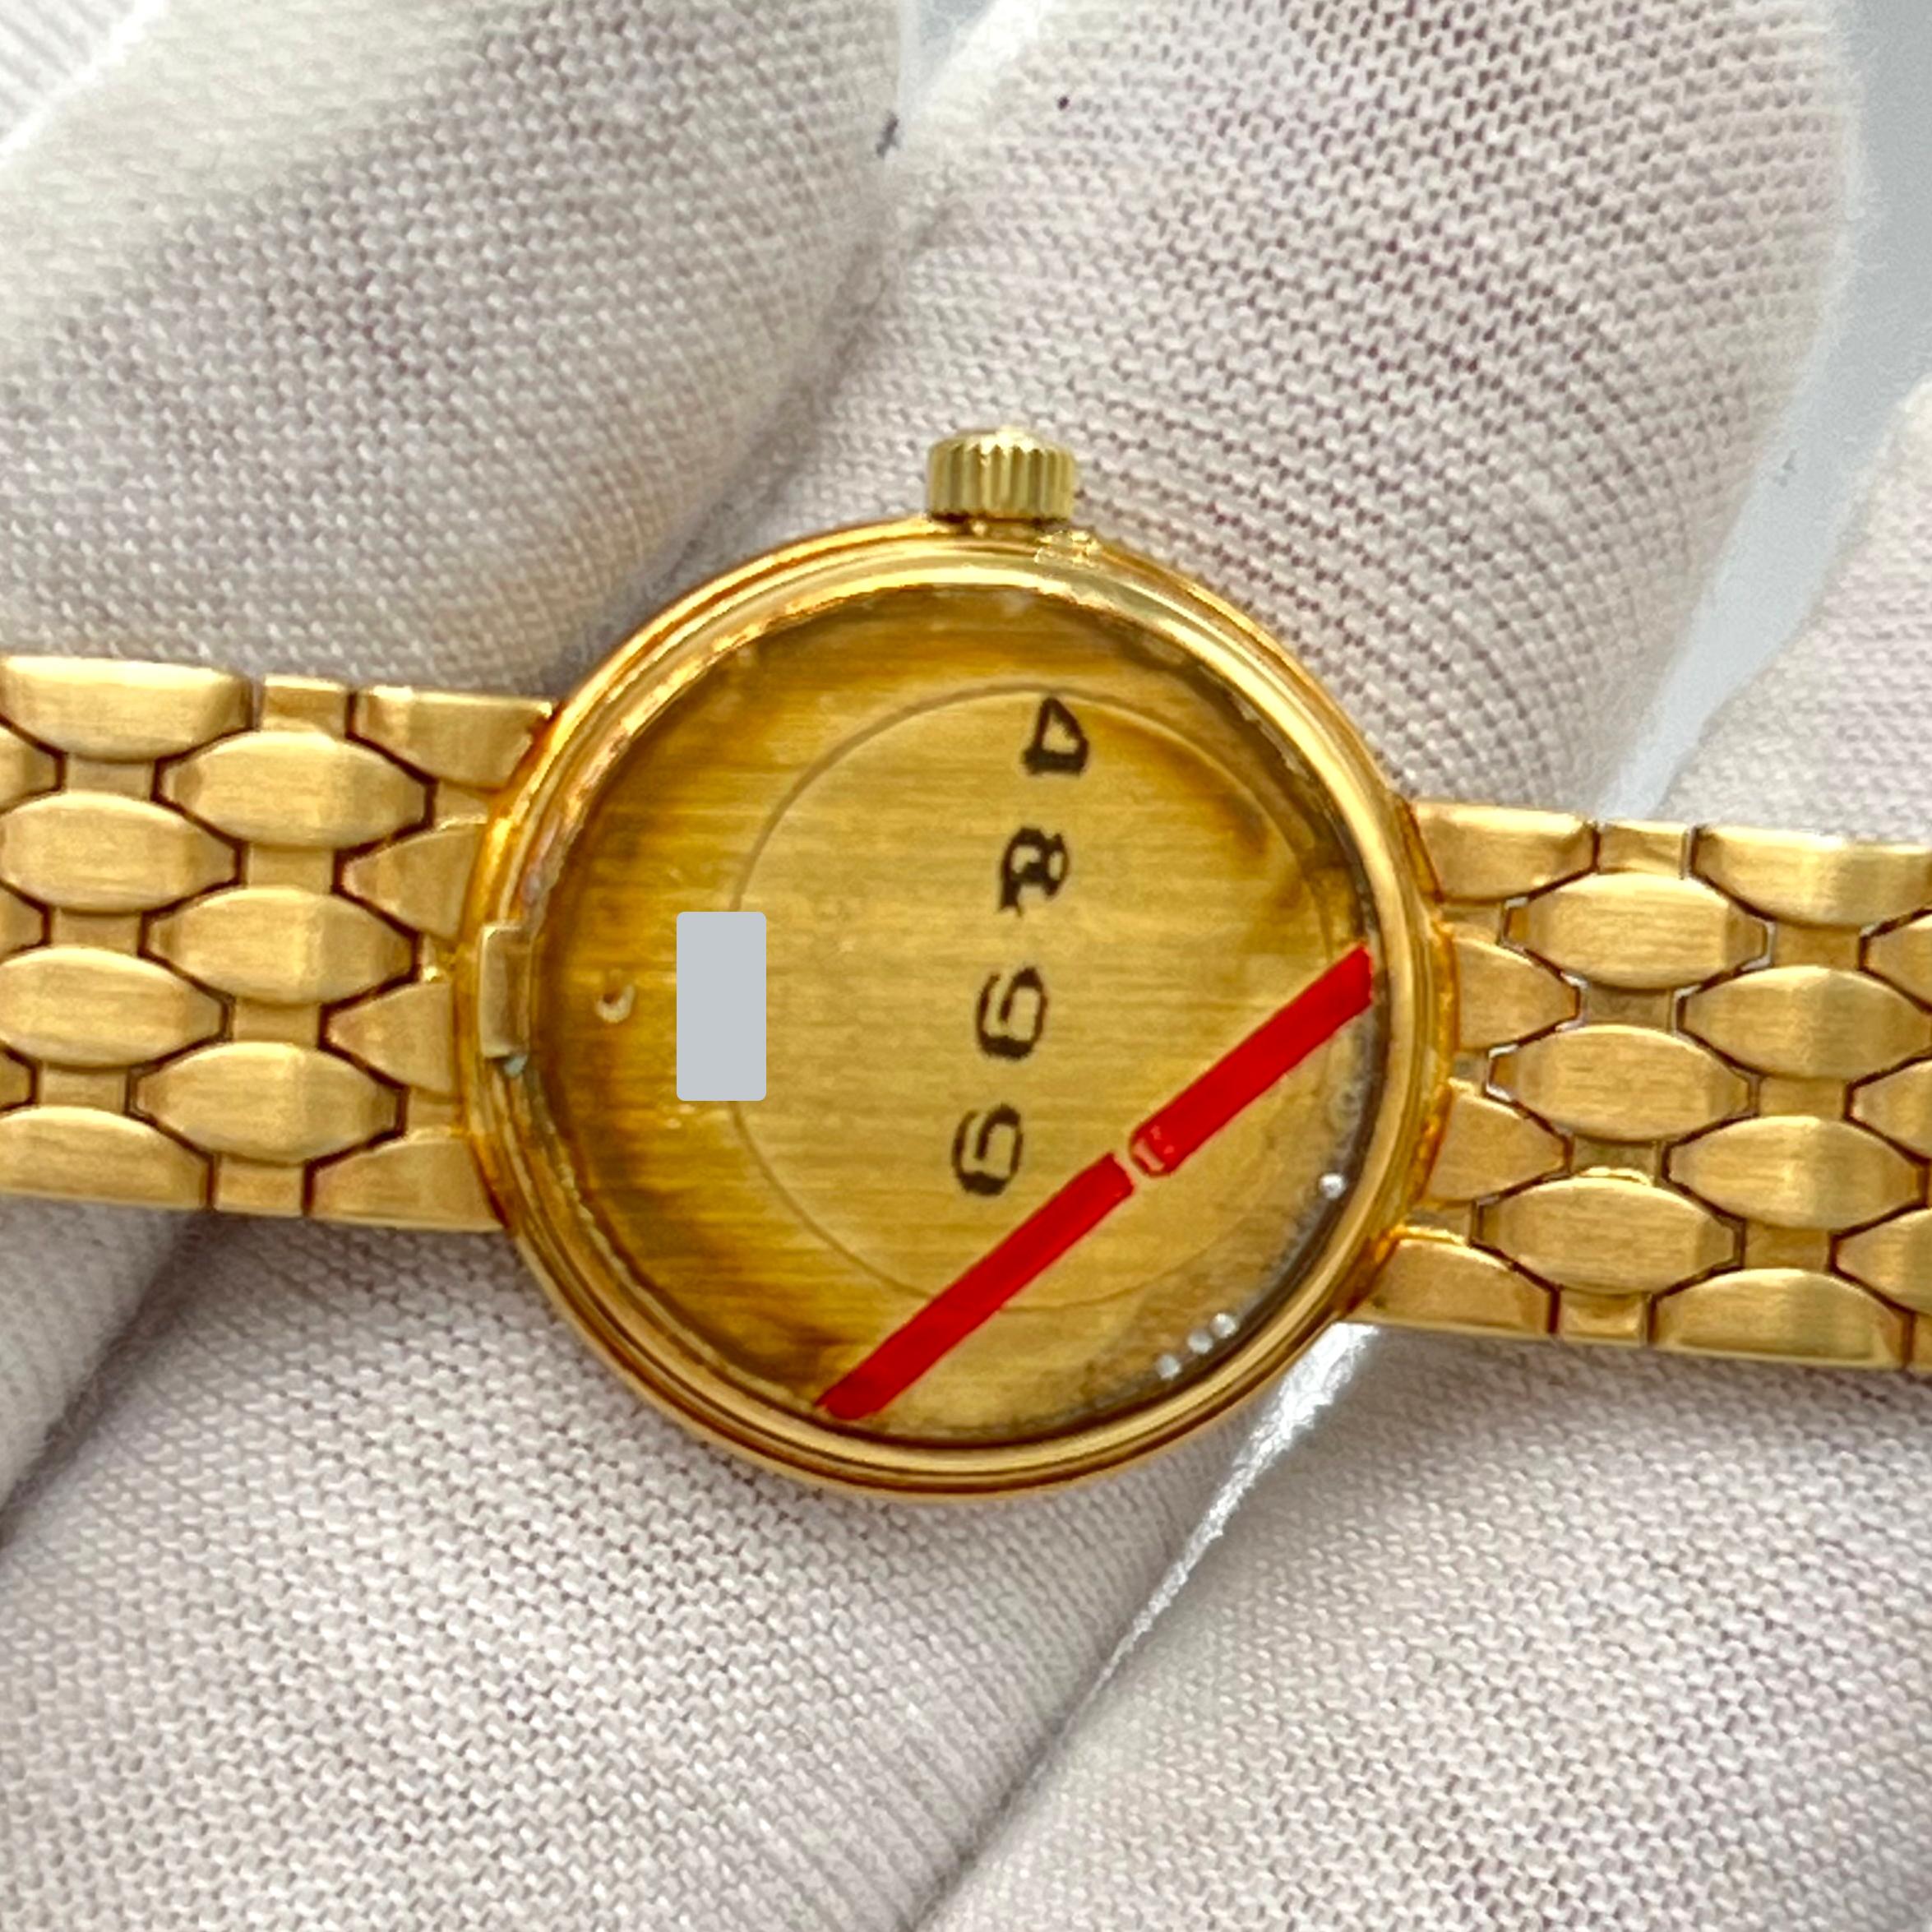 BAUME & MERCIER 14k Yellow Gold Quartz Watch For Sale 1